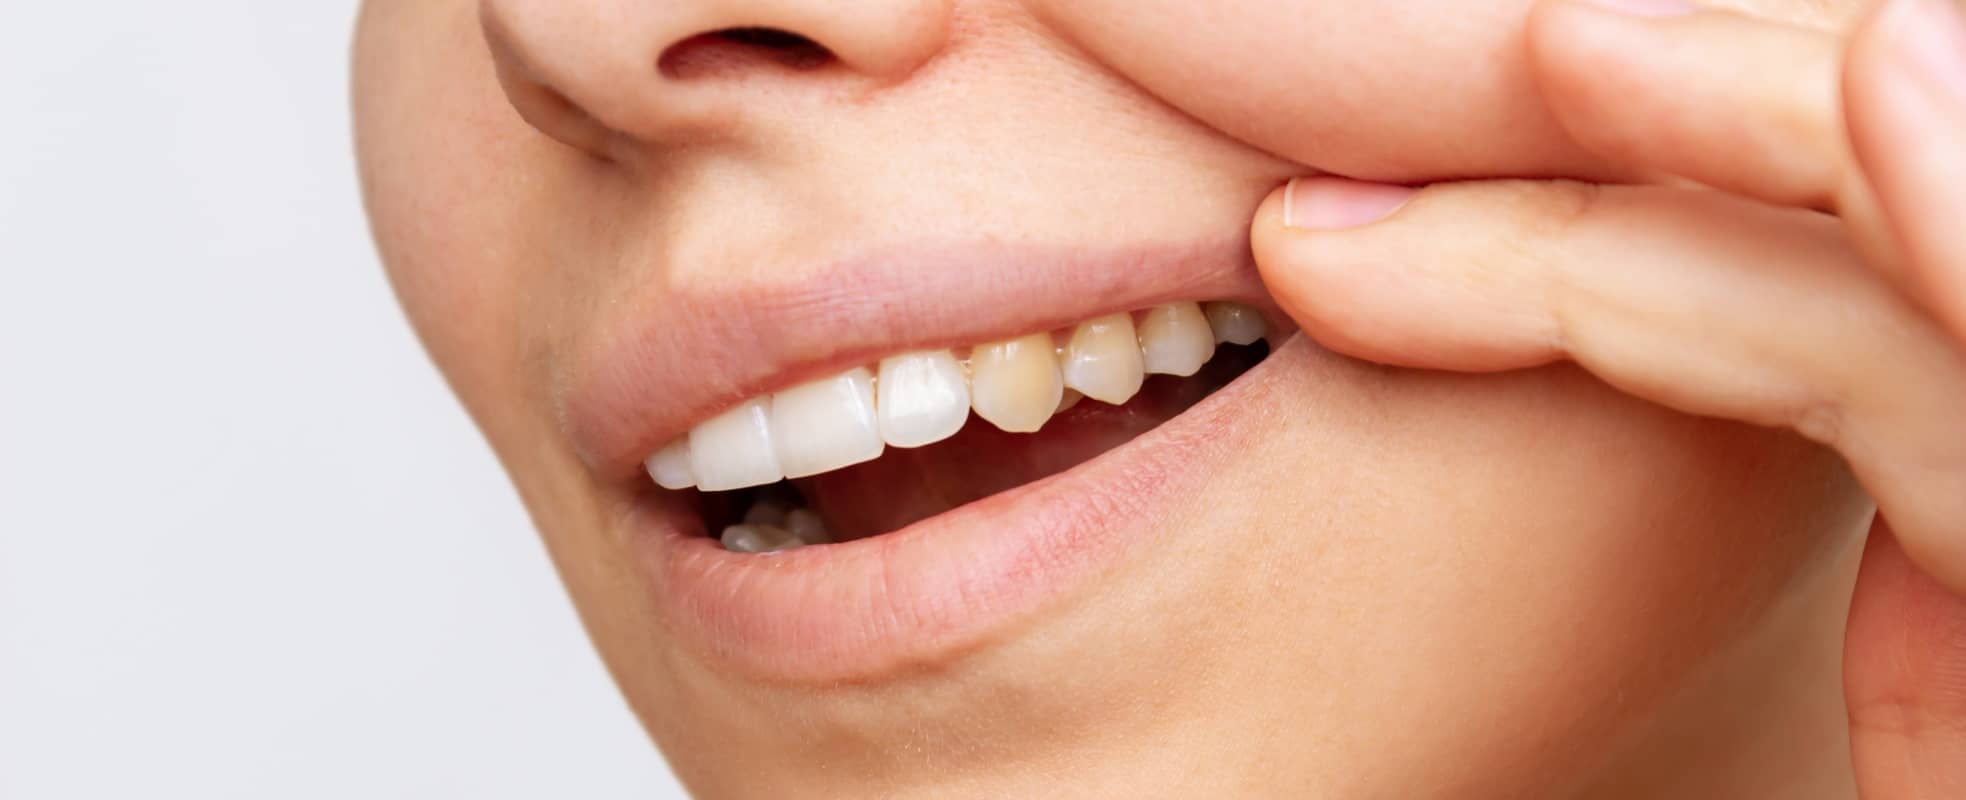 J'ai les dents jaunes : quelle est la meilleure solution entre des facettes dentaires ou un blanchiment des dents ? | Dr Elhyani | Paris